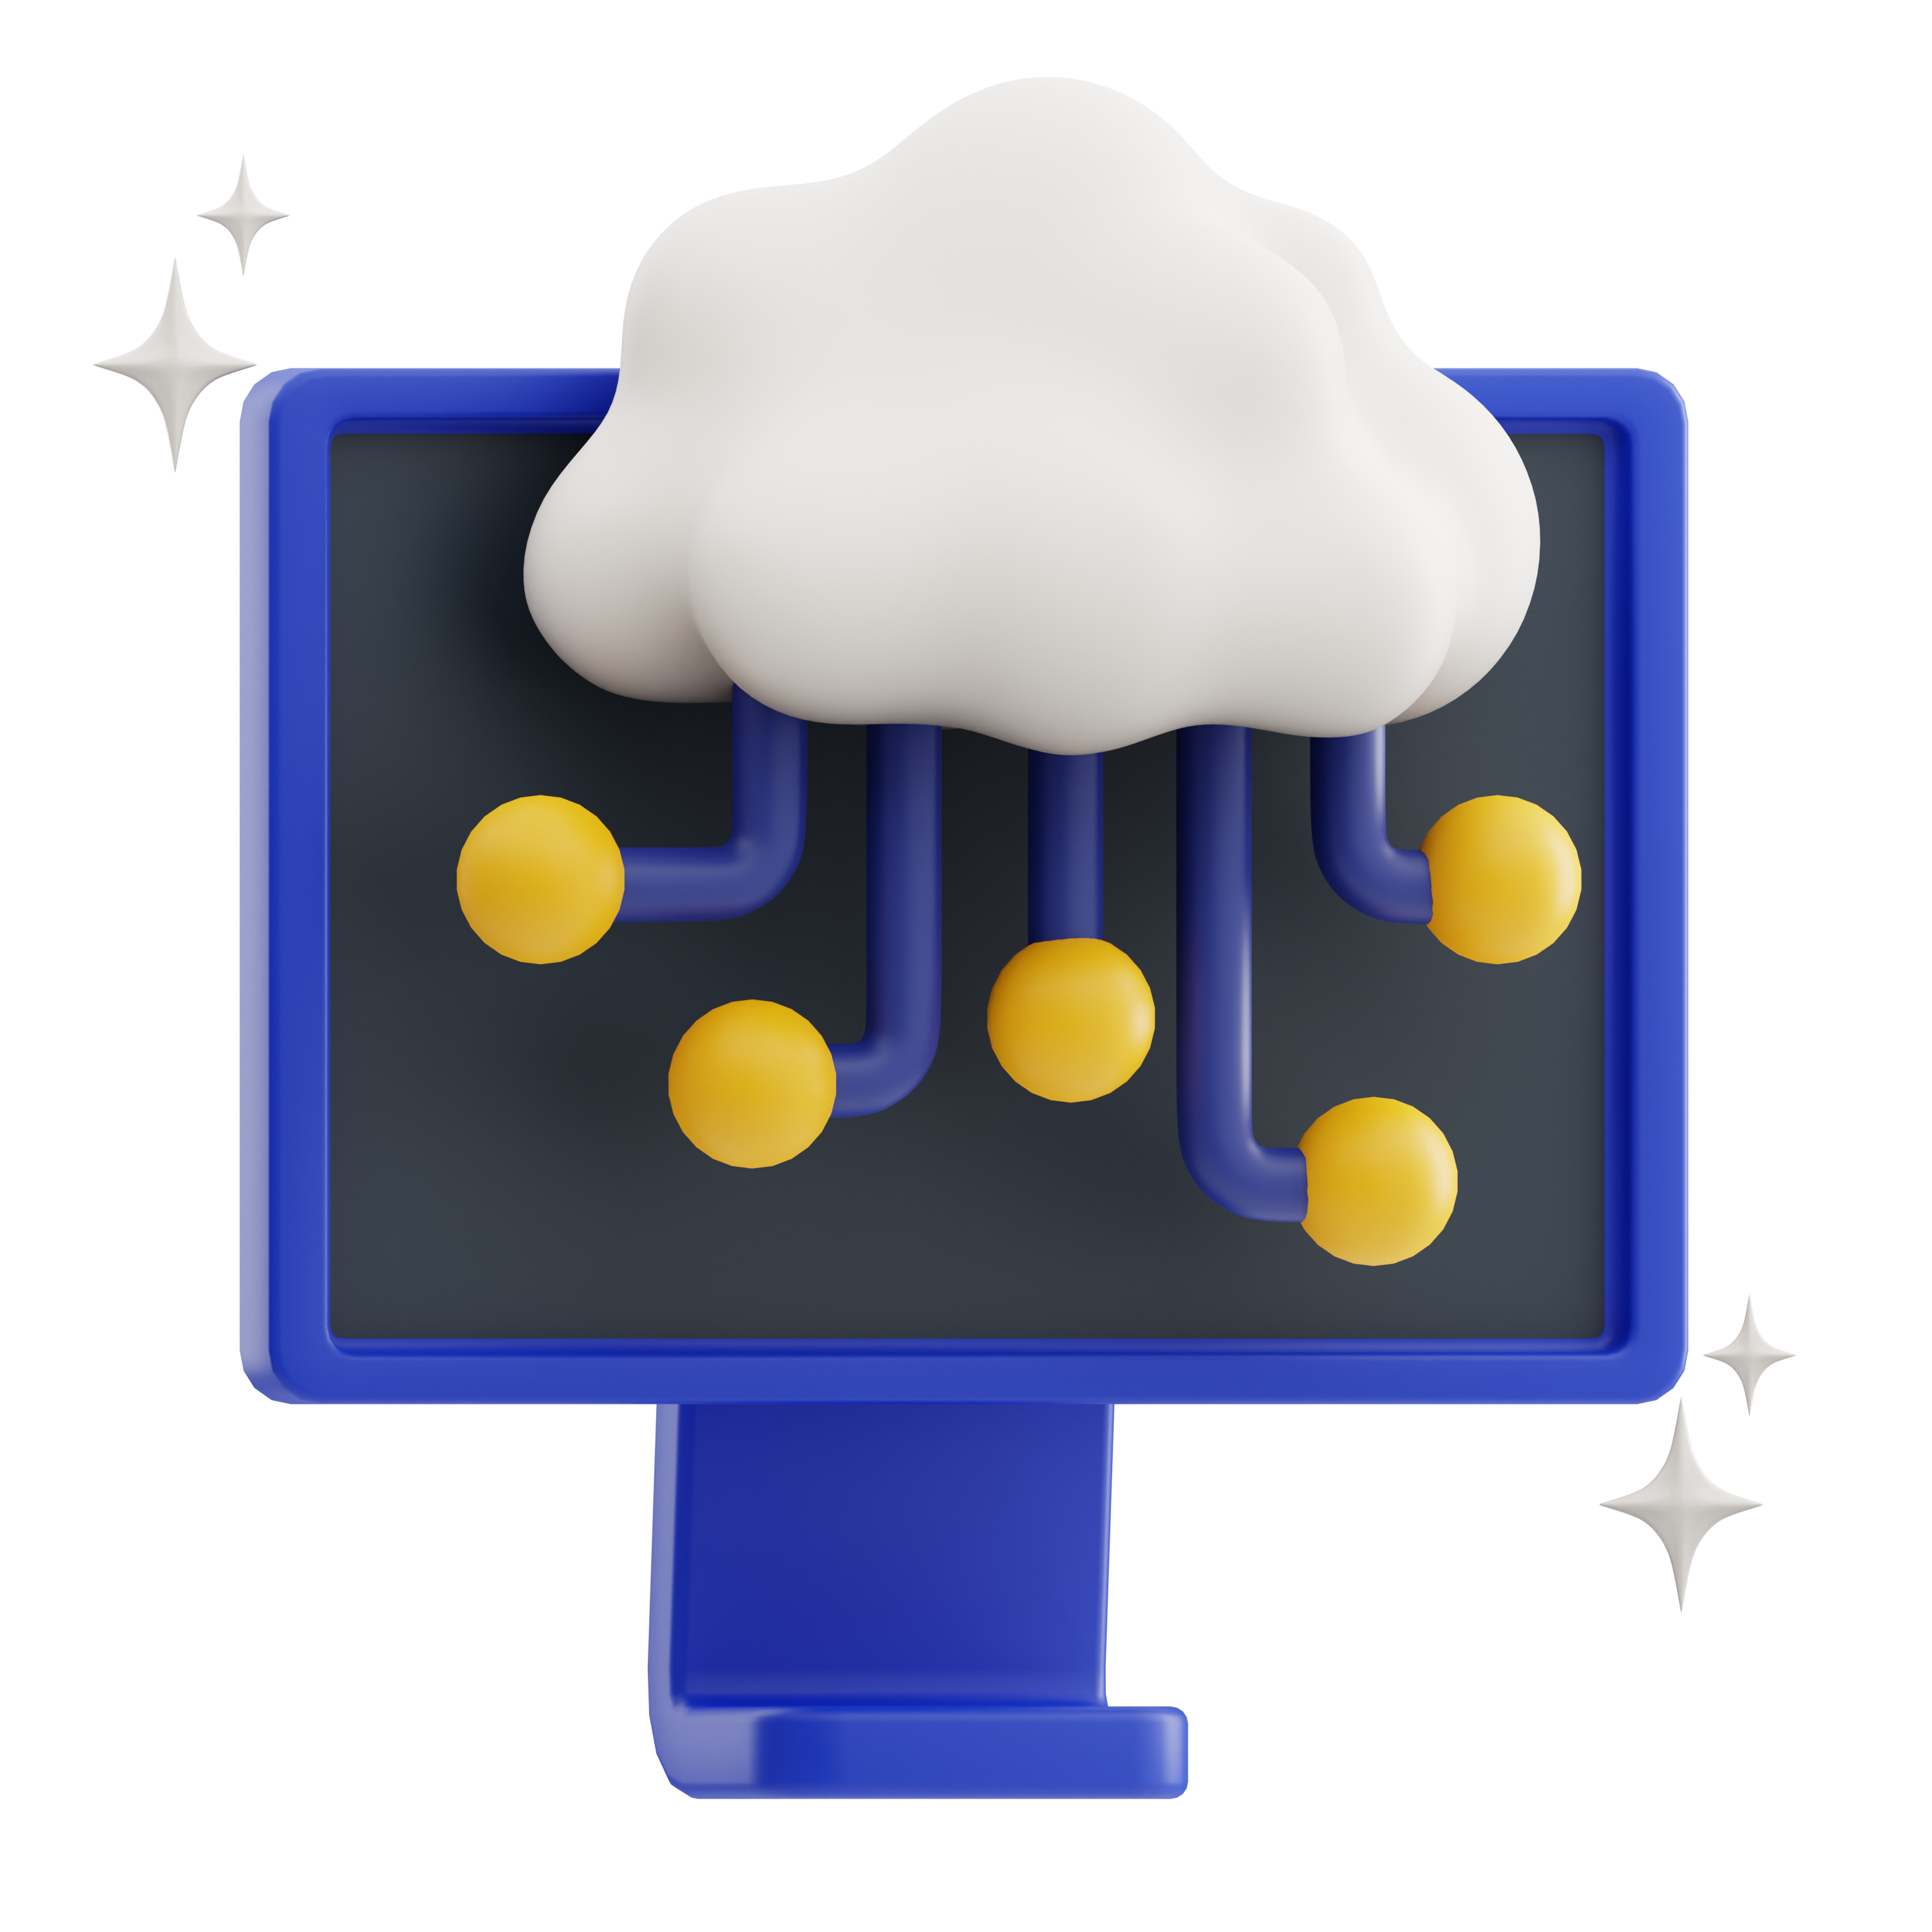 Cloud Native, soluciones cloud, nube, soluciones nativas de nube, contenedores, cirtualización, aws, ibm cloud, azure